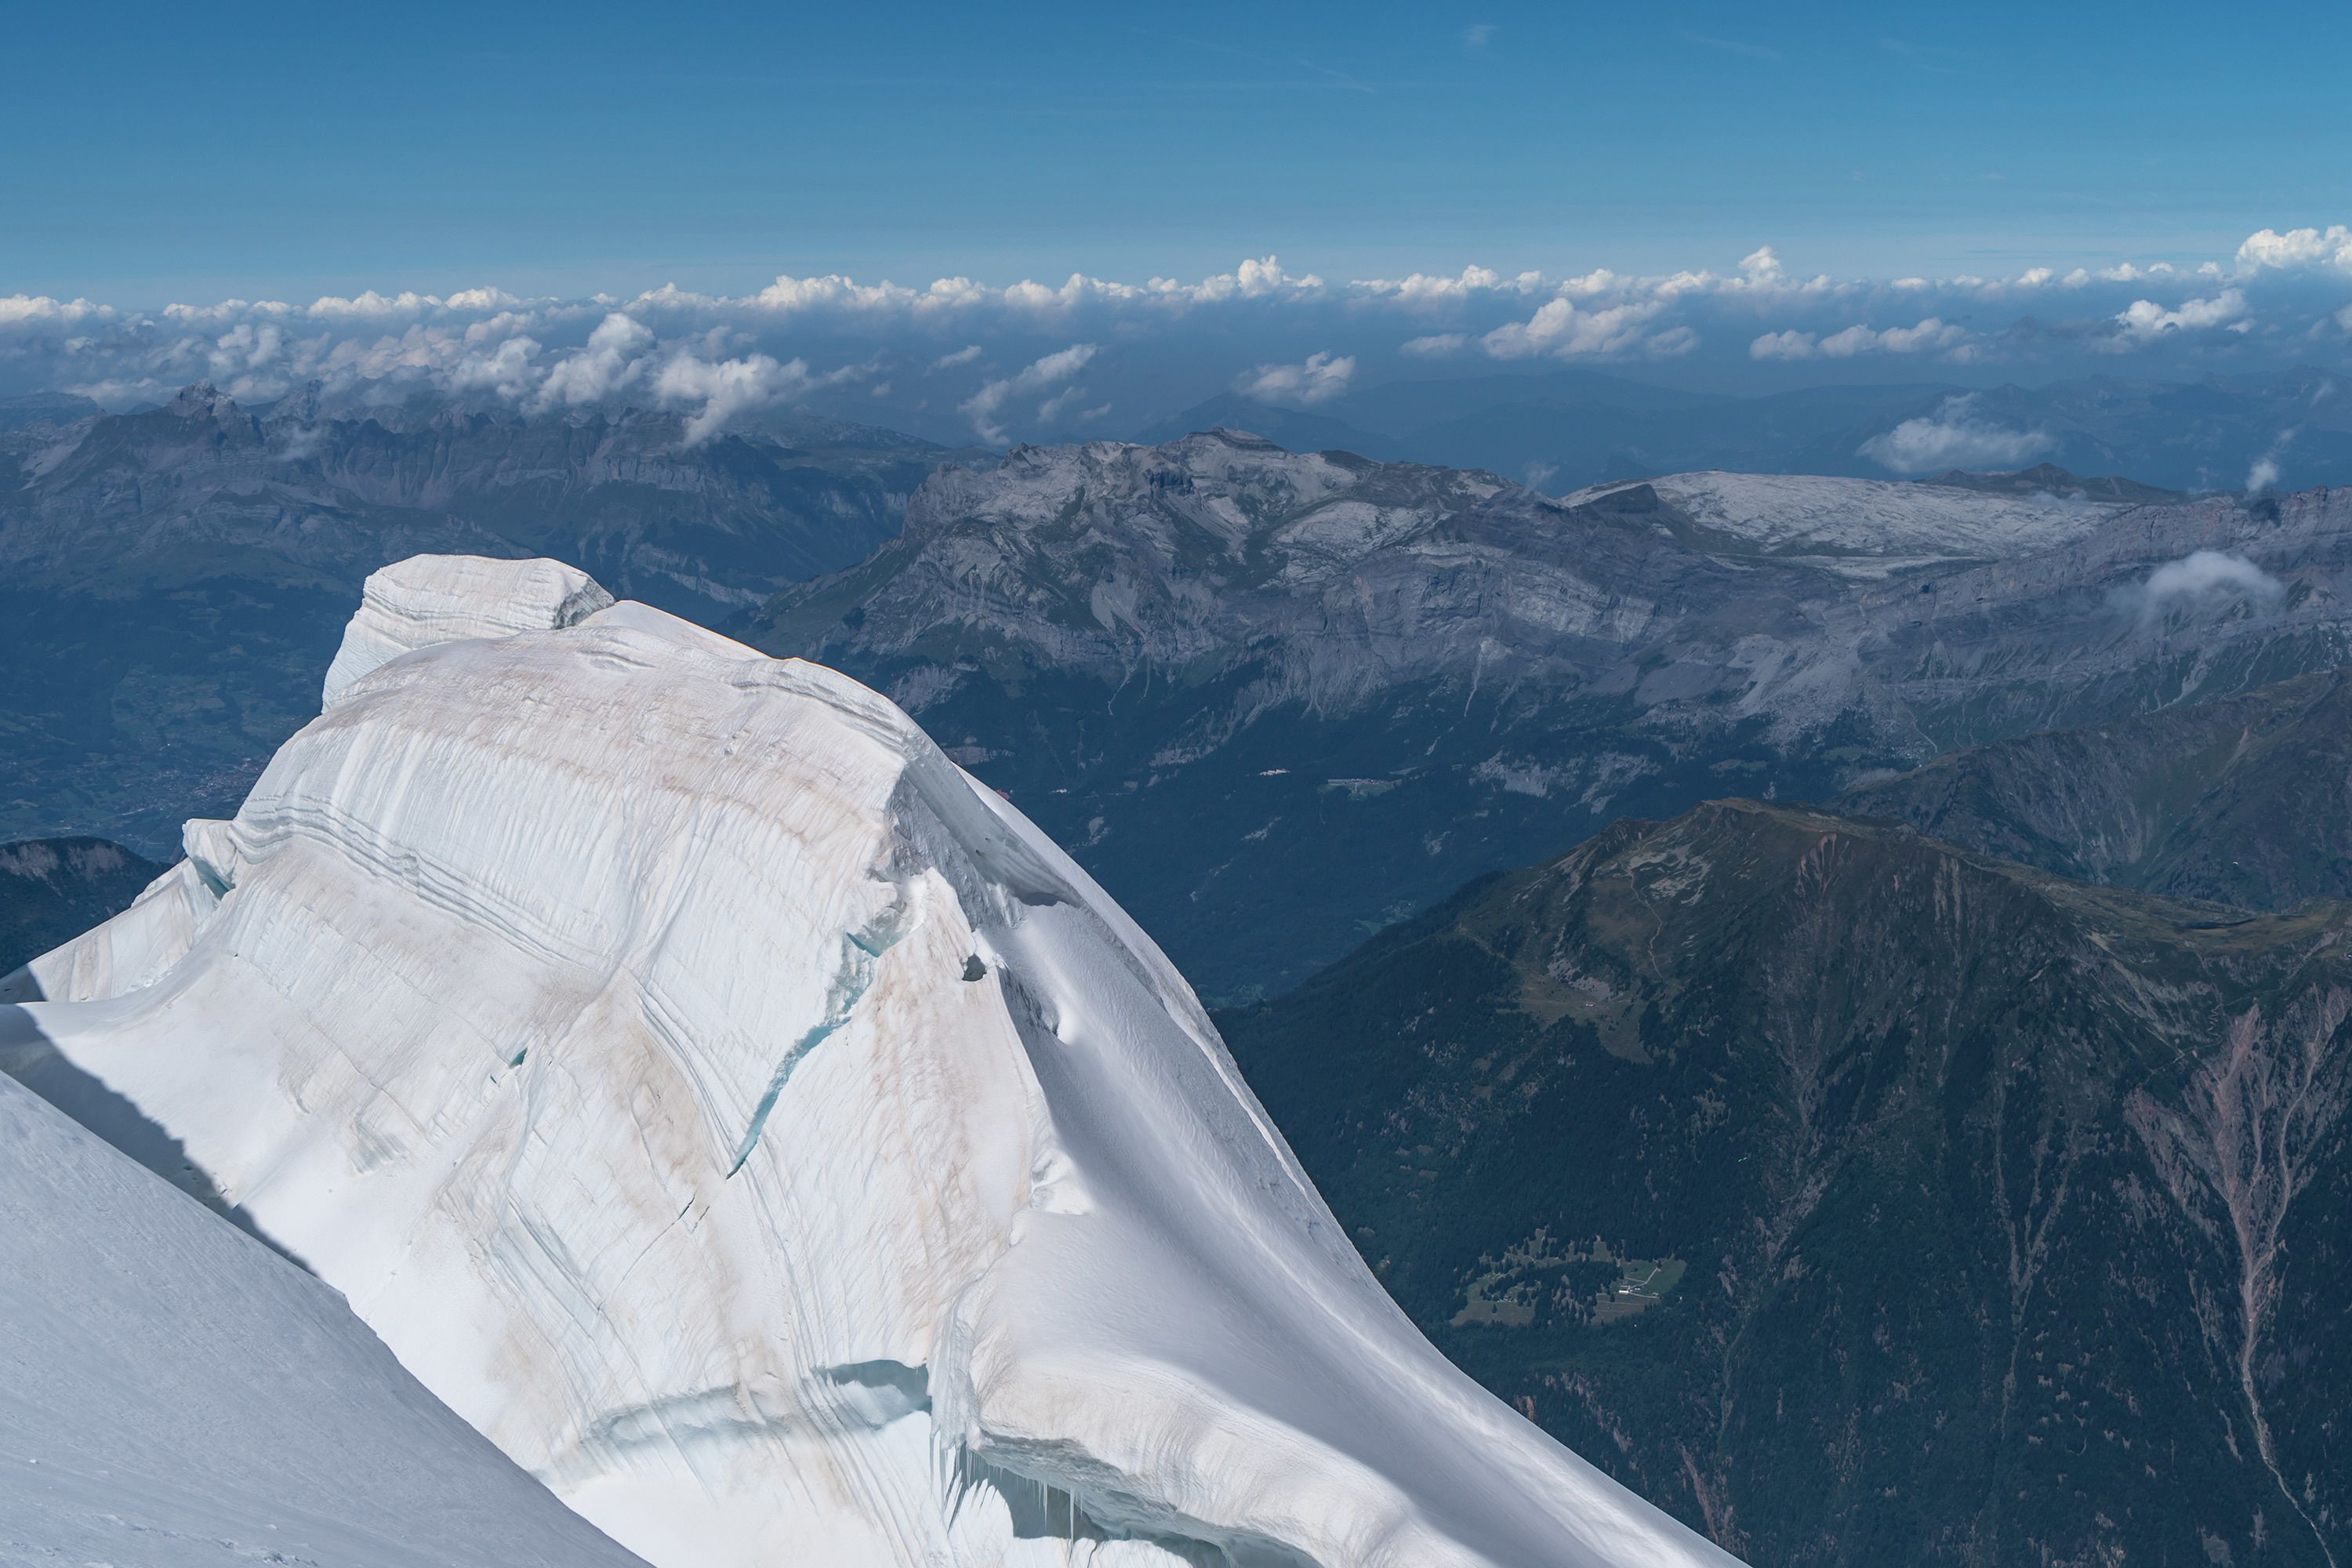 Flinke serac (ijstorens) op de noordwand van de Mont Blanc du Tacul